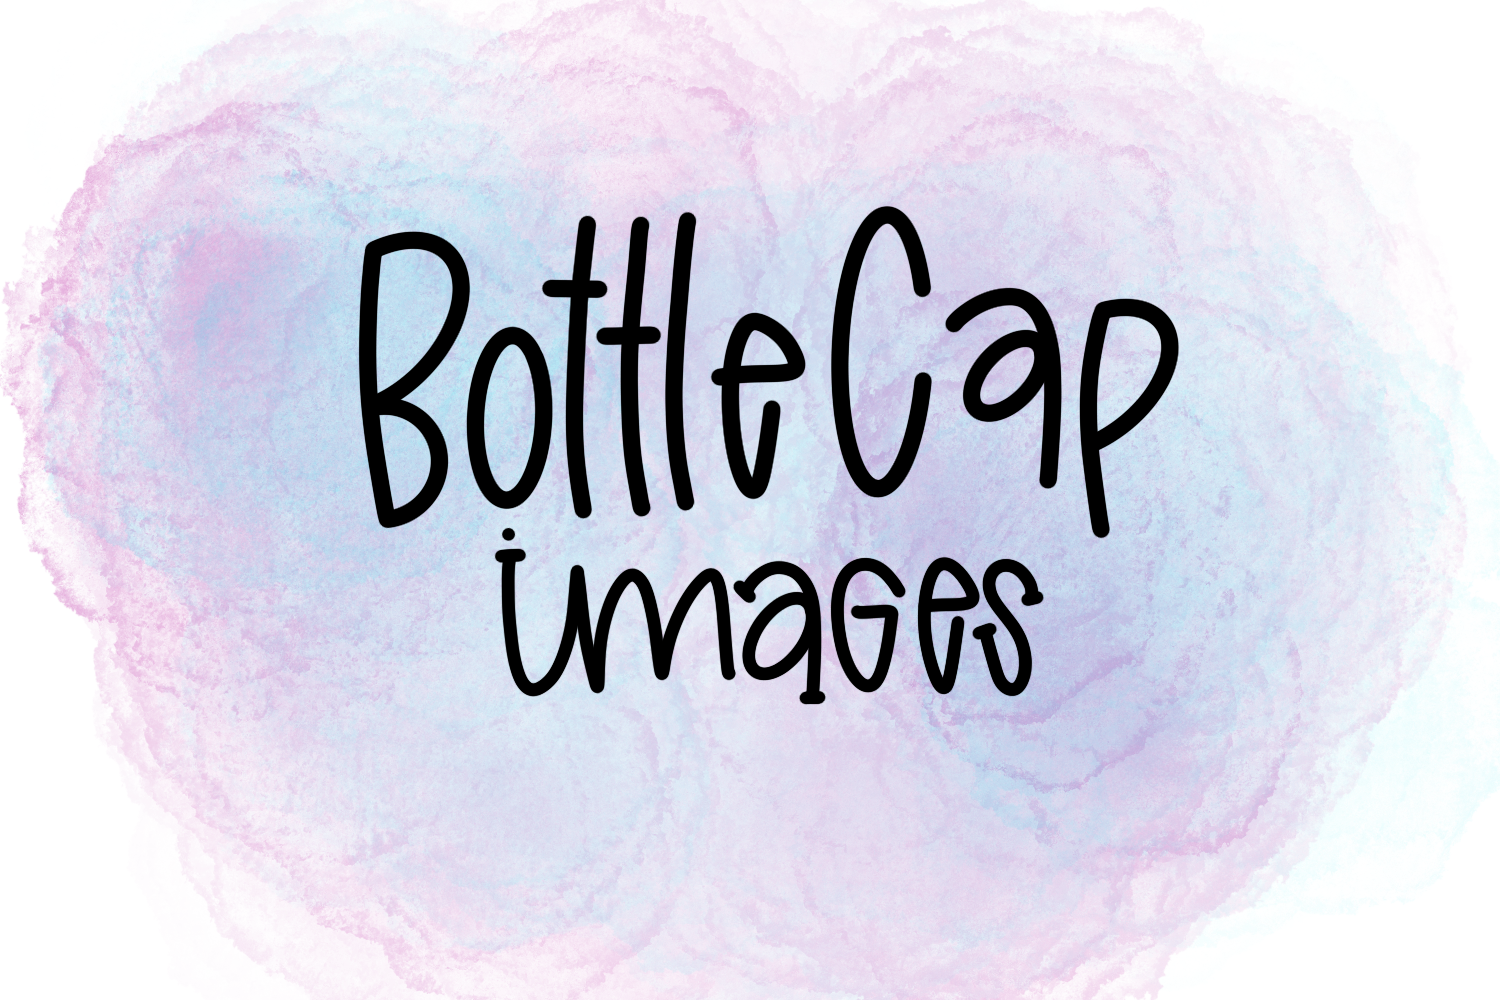 Bottle Cap Images